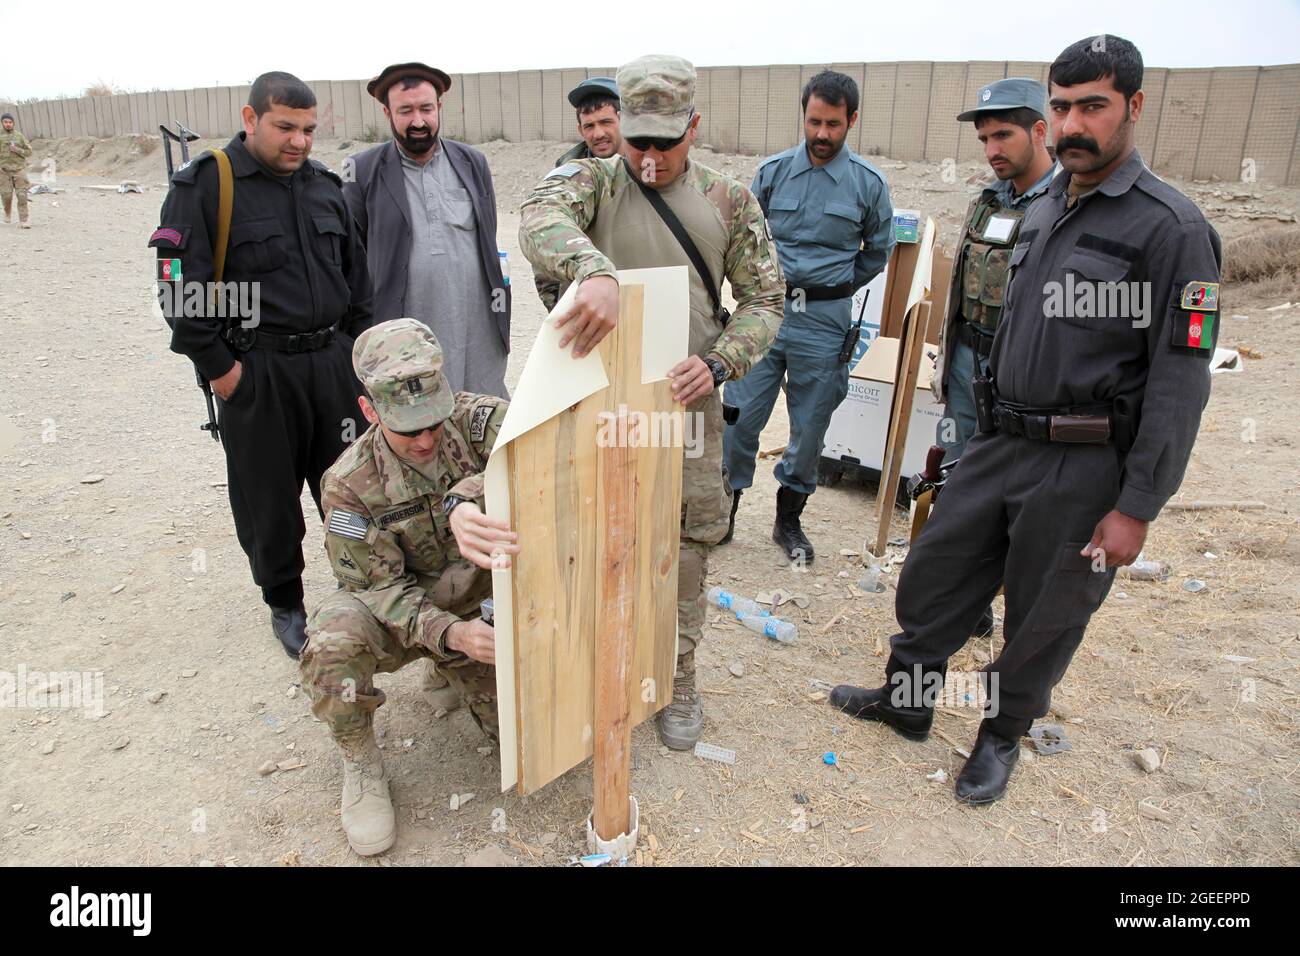 Soldaten der US-Armee, die dem Team 28 der Sicherheitskräfte, der Task Force 3/101, zugewiesen wurden, heften ein Ziel der uniformierten afghanischen Polizei, die der Stadt Khost zugewiesen wurde, um während eines Live-Feuers auf einen kleinen Waffenbereich auf Lager Parsa, Provinz Khowst, Afghanistan, 30. Januar 2013 zu schießen. Die Reichweite ermöglichte es der AUP, ihre Kampfkünste mit M-9 Beretta Pistolen und AK-47 Gewehren zu üben. (USA Armeefoto von Sgt. Kimberly Trumbull / Veröffentlicht) Stockfoto